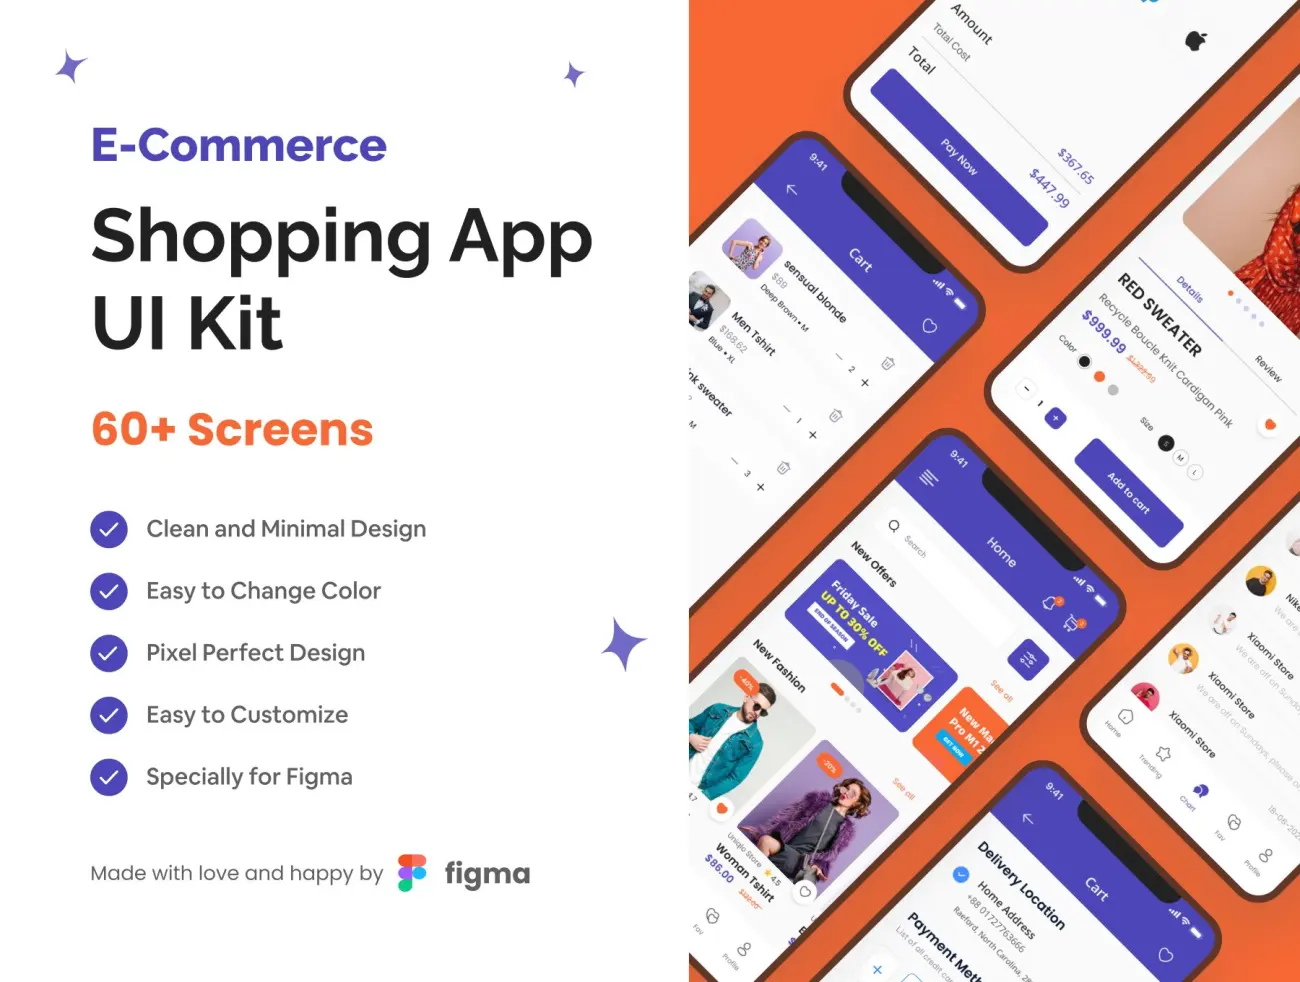 电子商务购物应用程序UI套件 E-Commerce Shopping App UI Kit缩略图到位啦UI